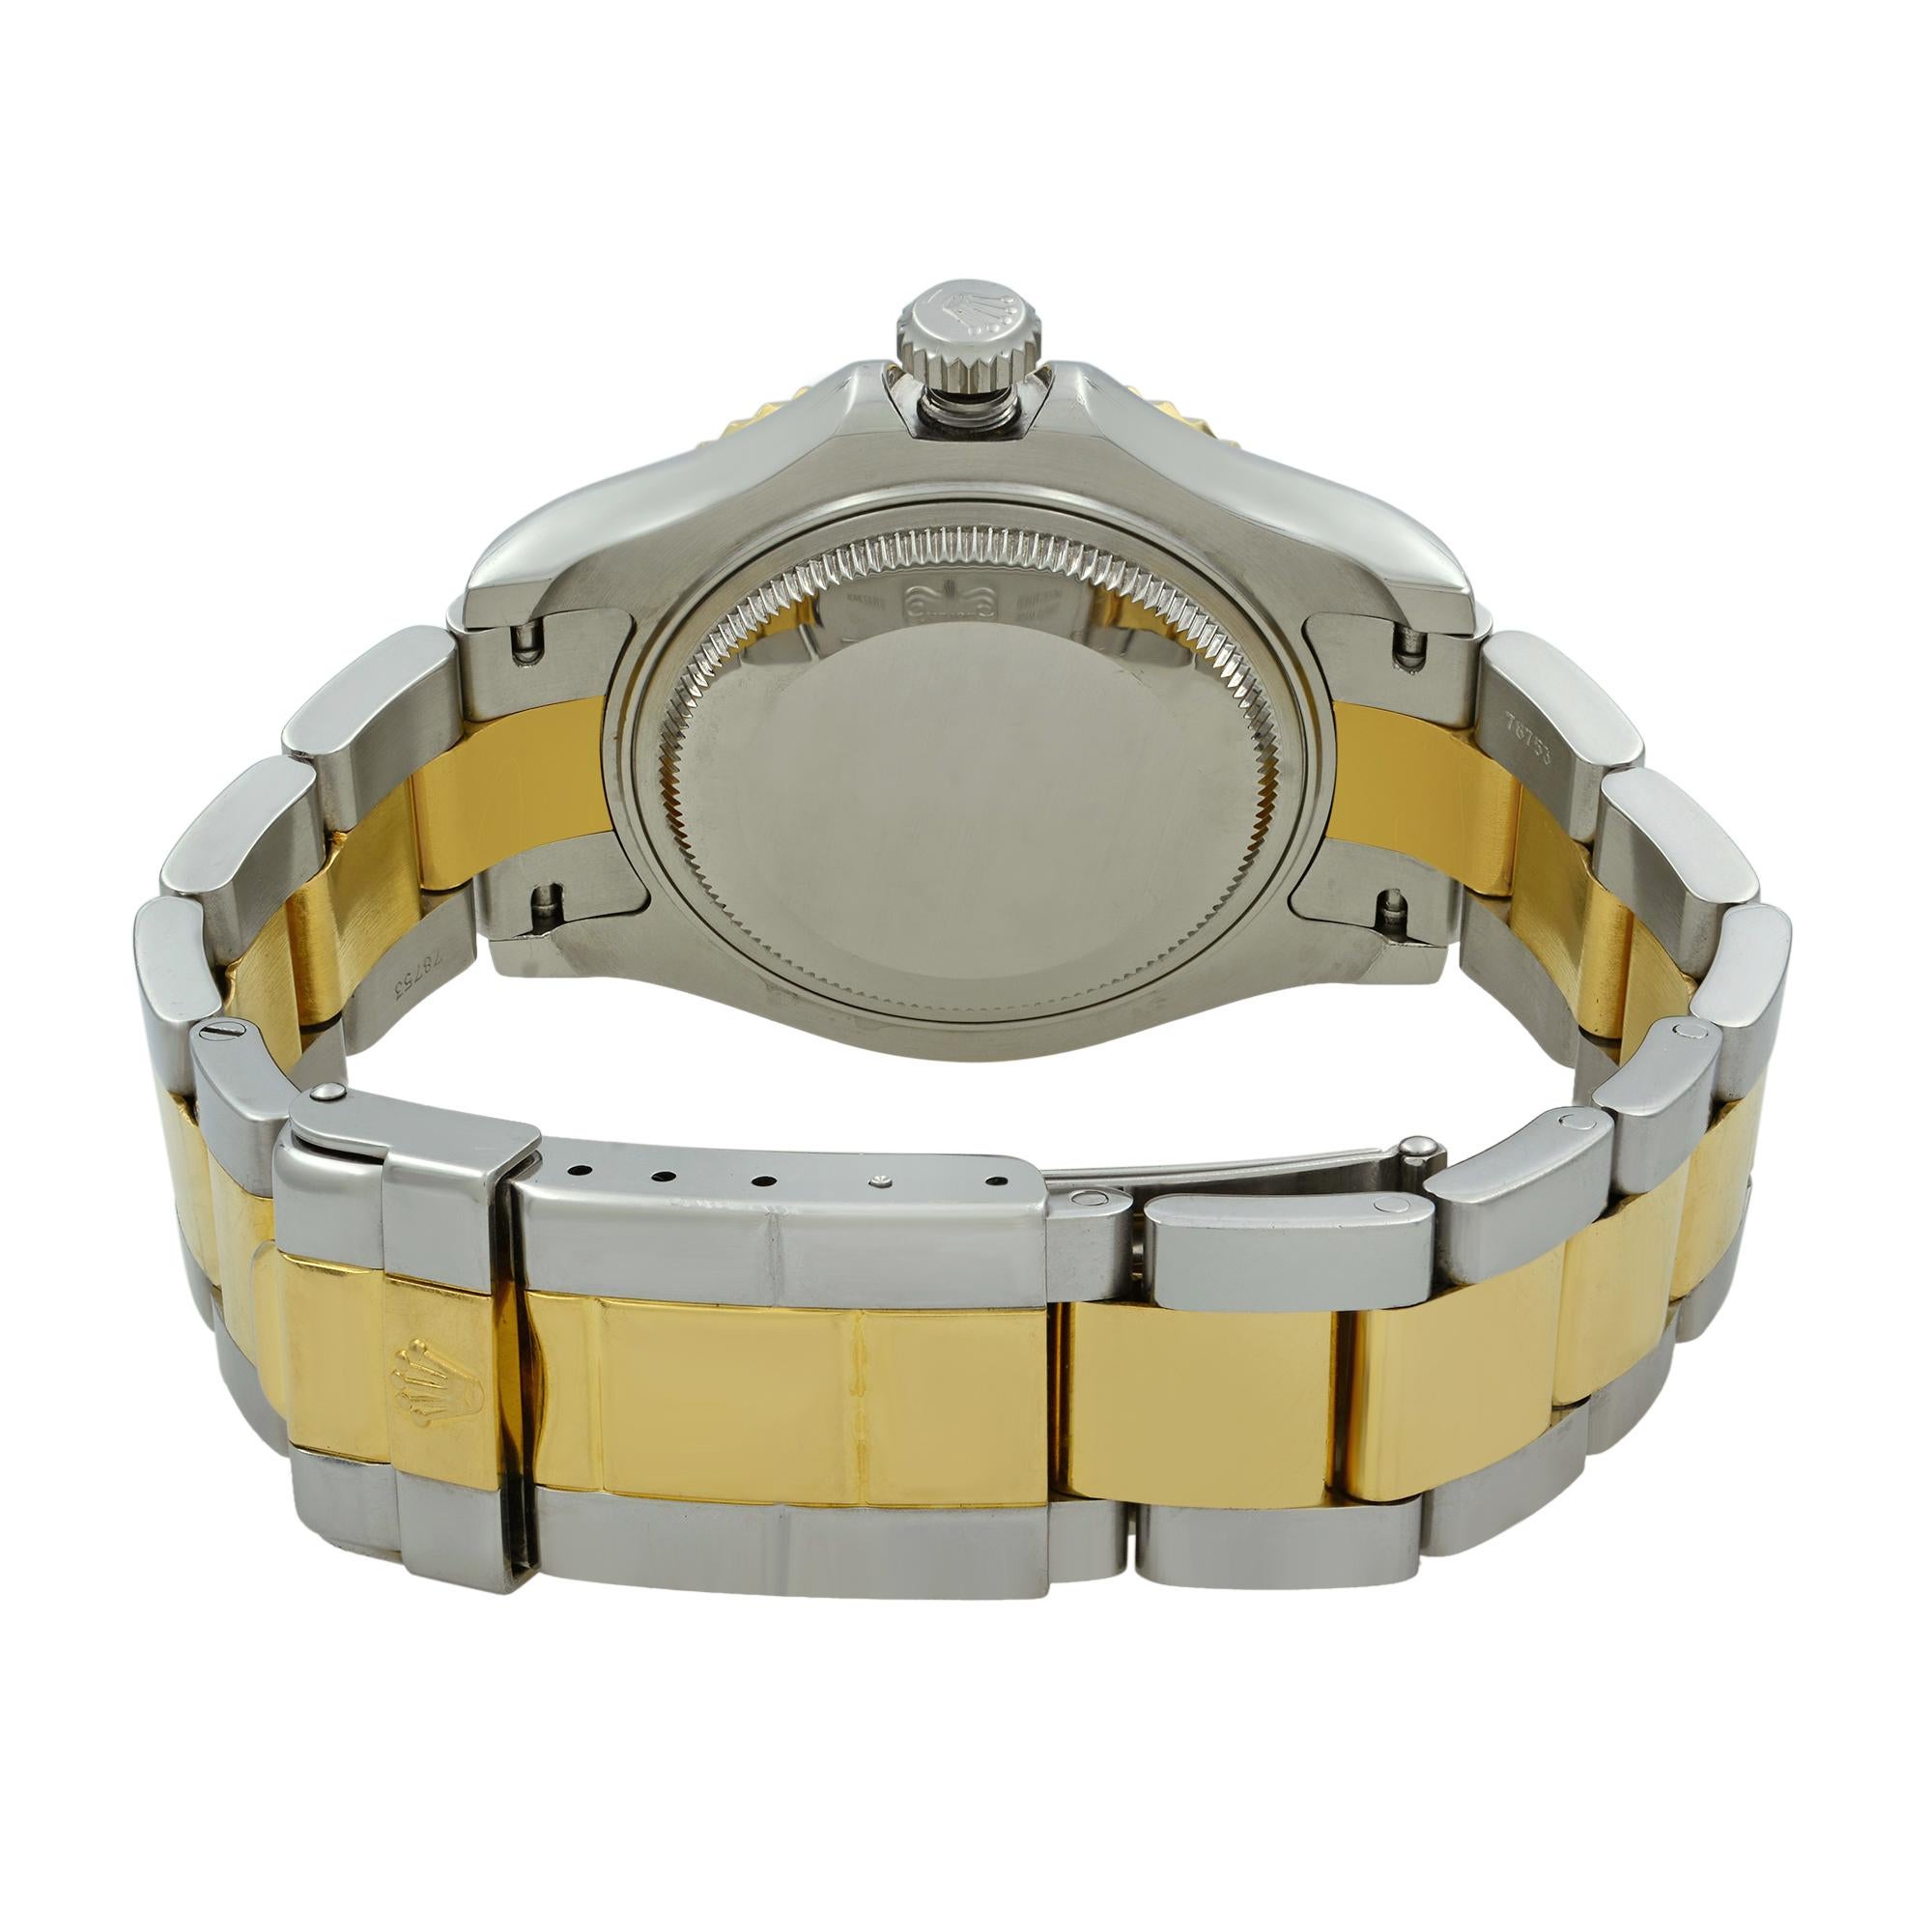 Rolex Yacht-Master 18 Karat Yellow Gold Steel Champagne Dial Unisex Watch 168623 1